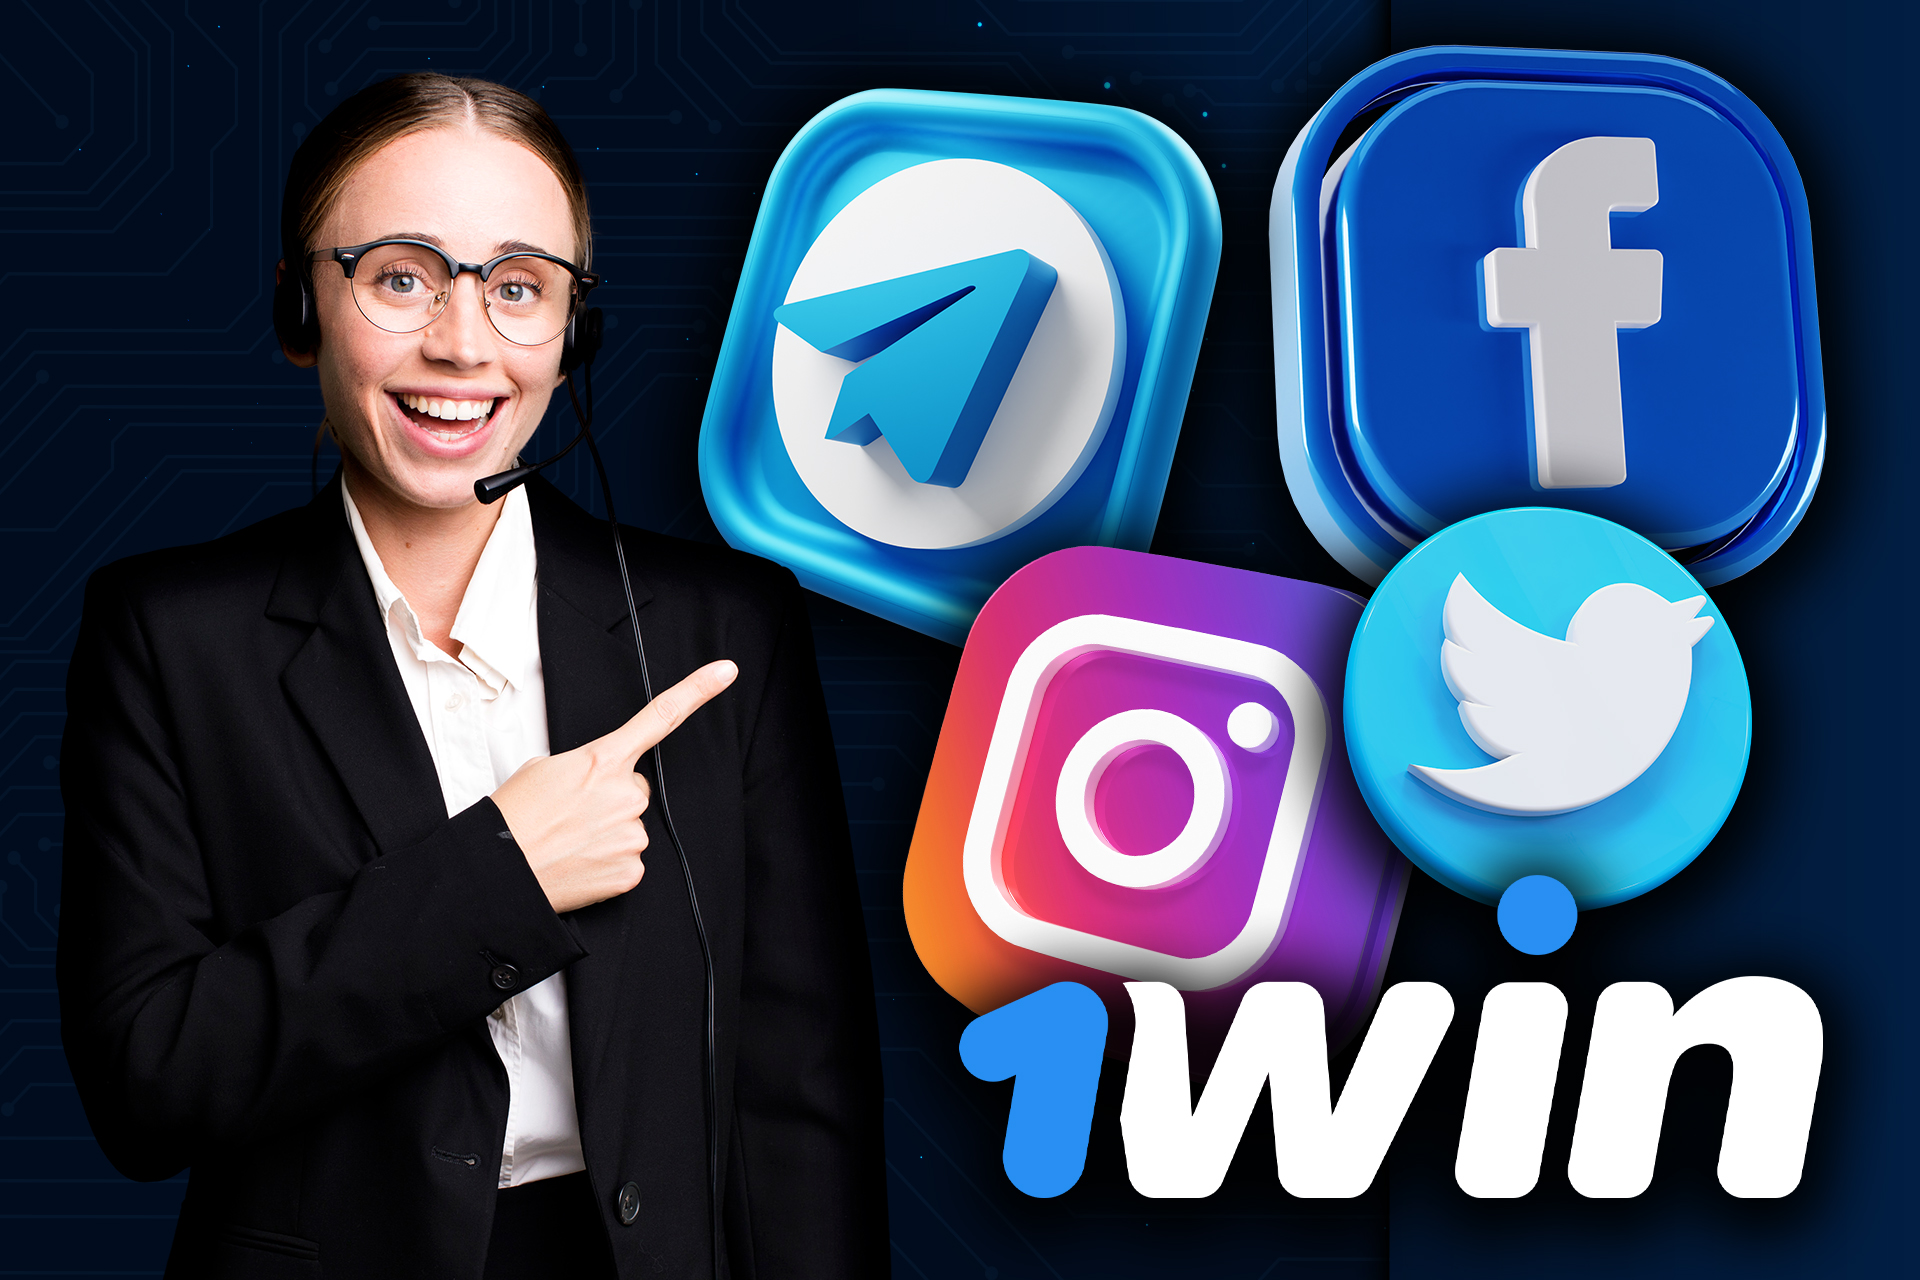 Puede encontrar los canales de 1win en diversas redes sociales.